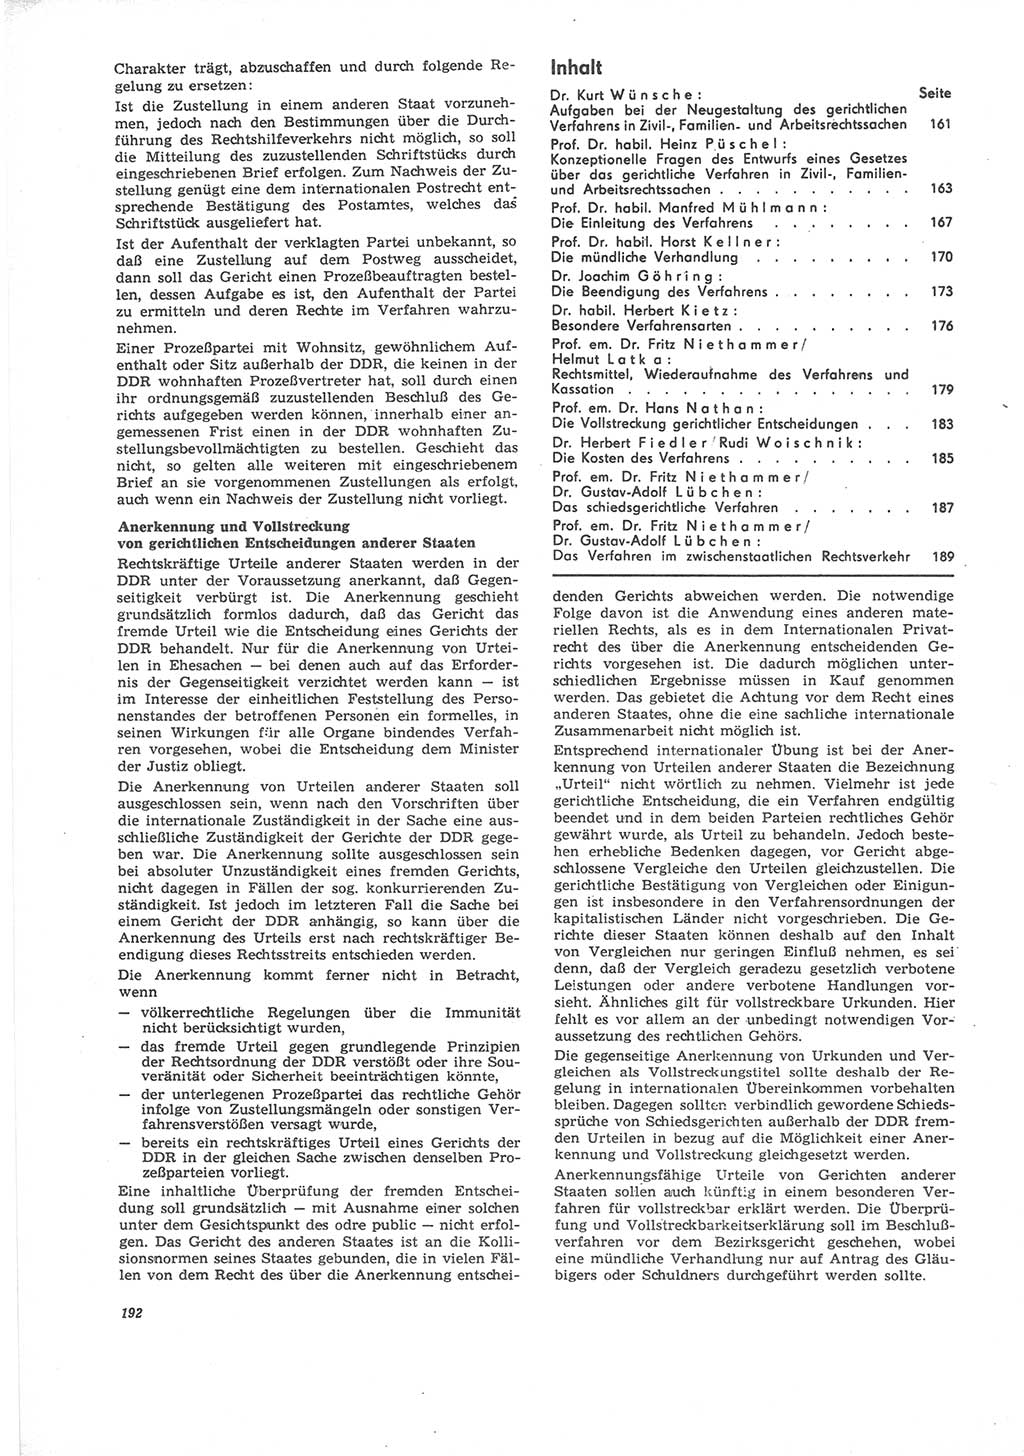 Neue Justiz (NJ), Zeitschrift für Recht und Rechtswissenschaft [Deutsche Demokratische Republik (DDR)], 24. Jahrgang 1970, Seite 192 (NJ DDR 1970, S. 192)